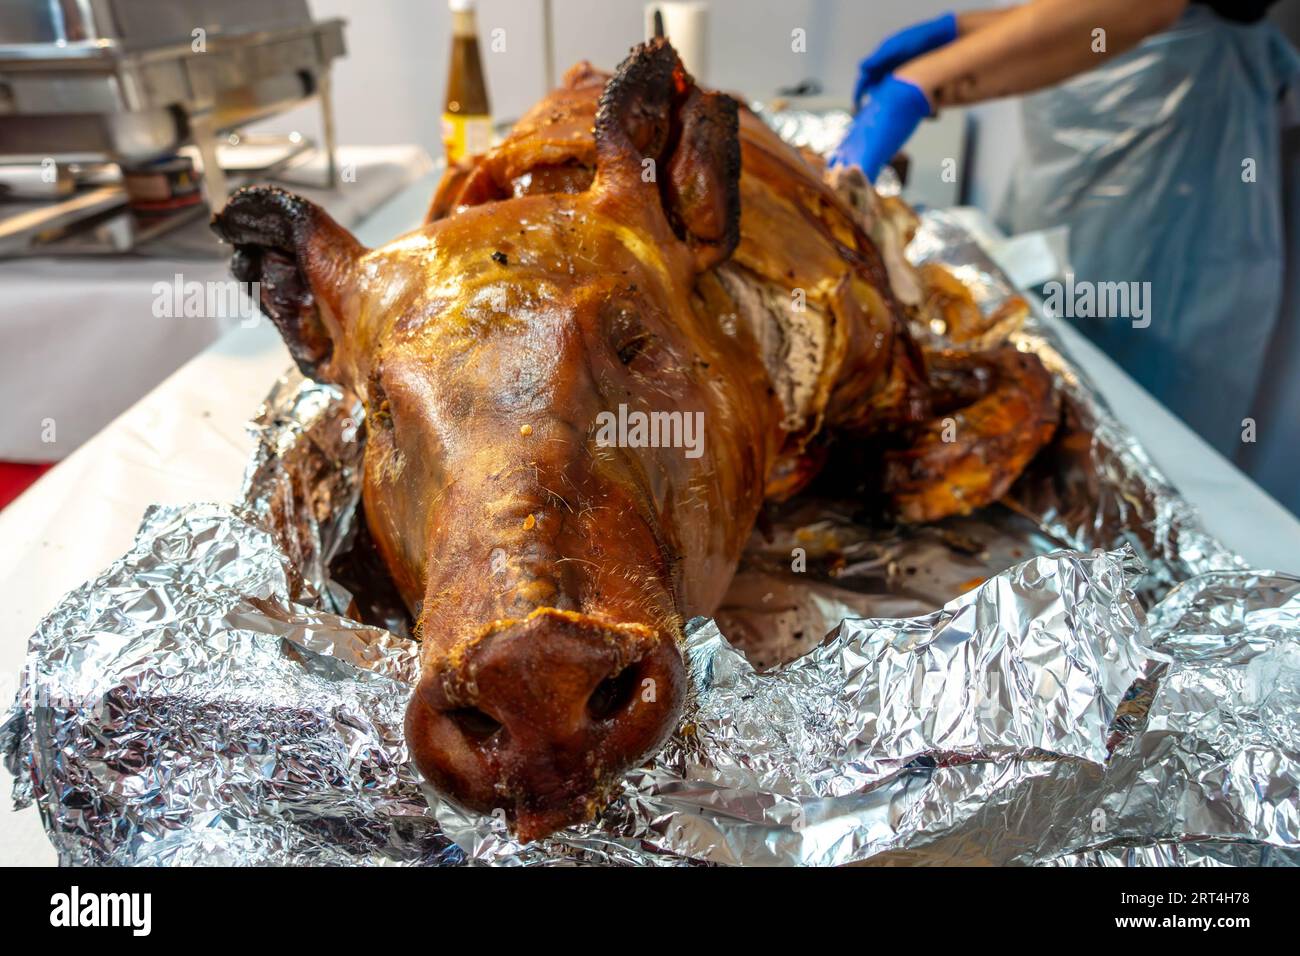 Ein Schweinebraten oder Lechon wird traditionell bei philippinischen Feiern und besonderen Veranstaltungen abgetrennt. Stockfoto